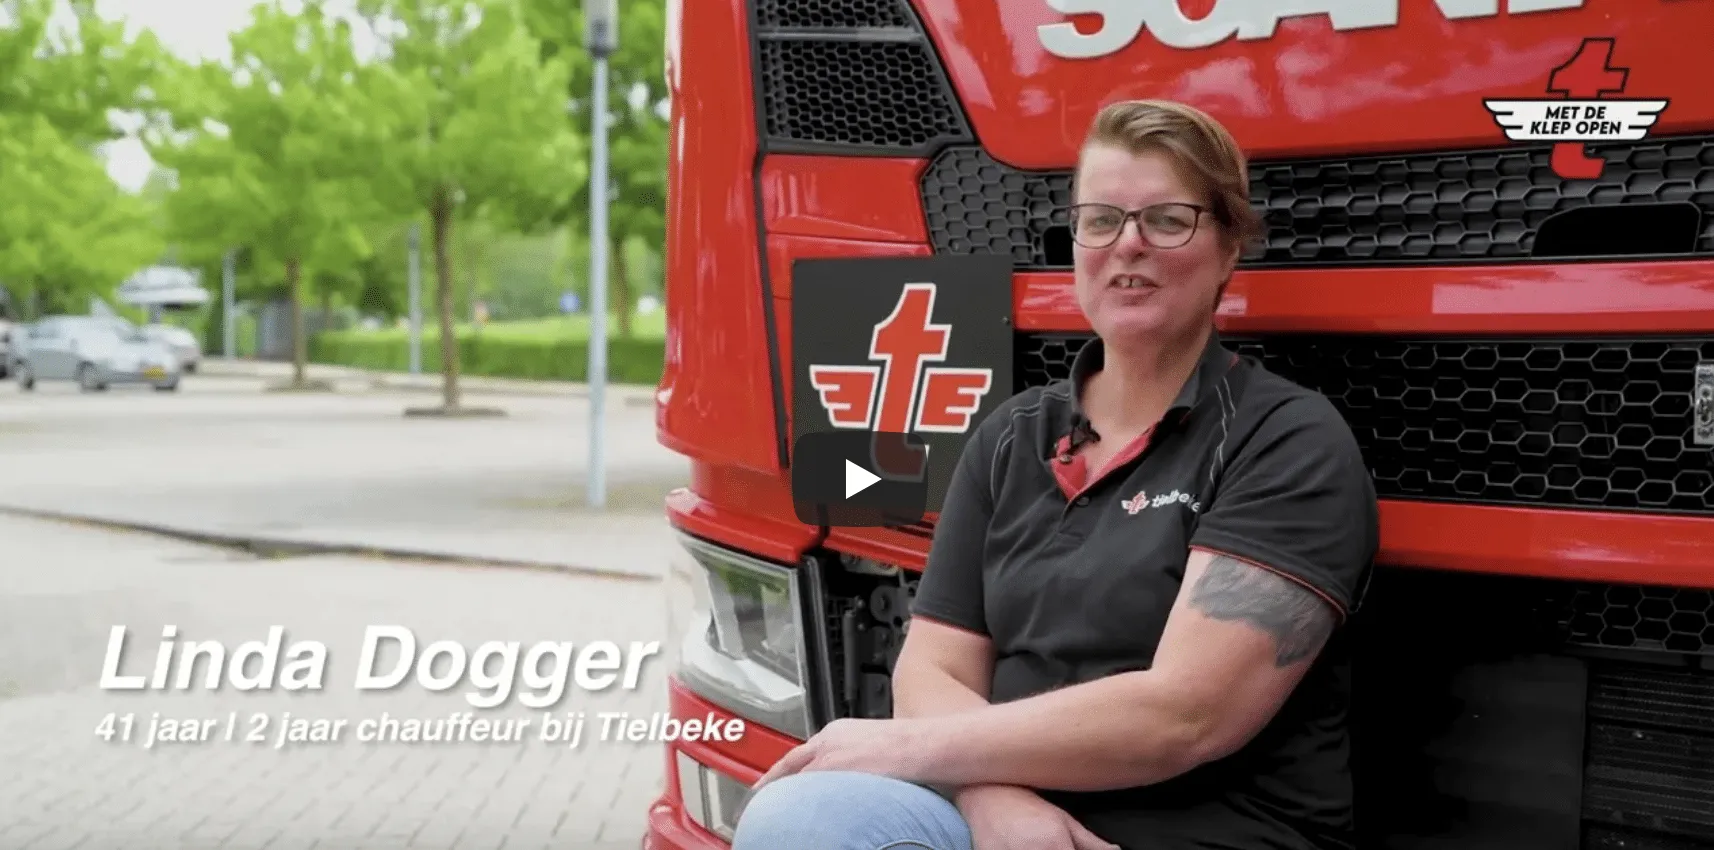 Chauffeur Linda Dogger zit voor haar vrachtwagen